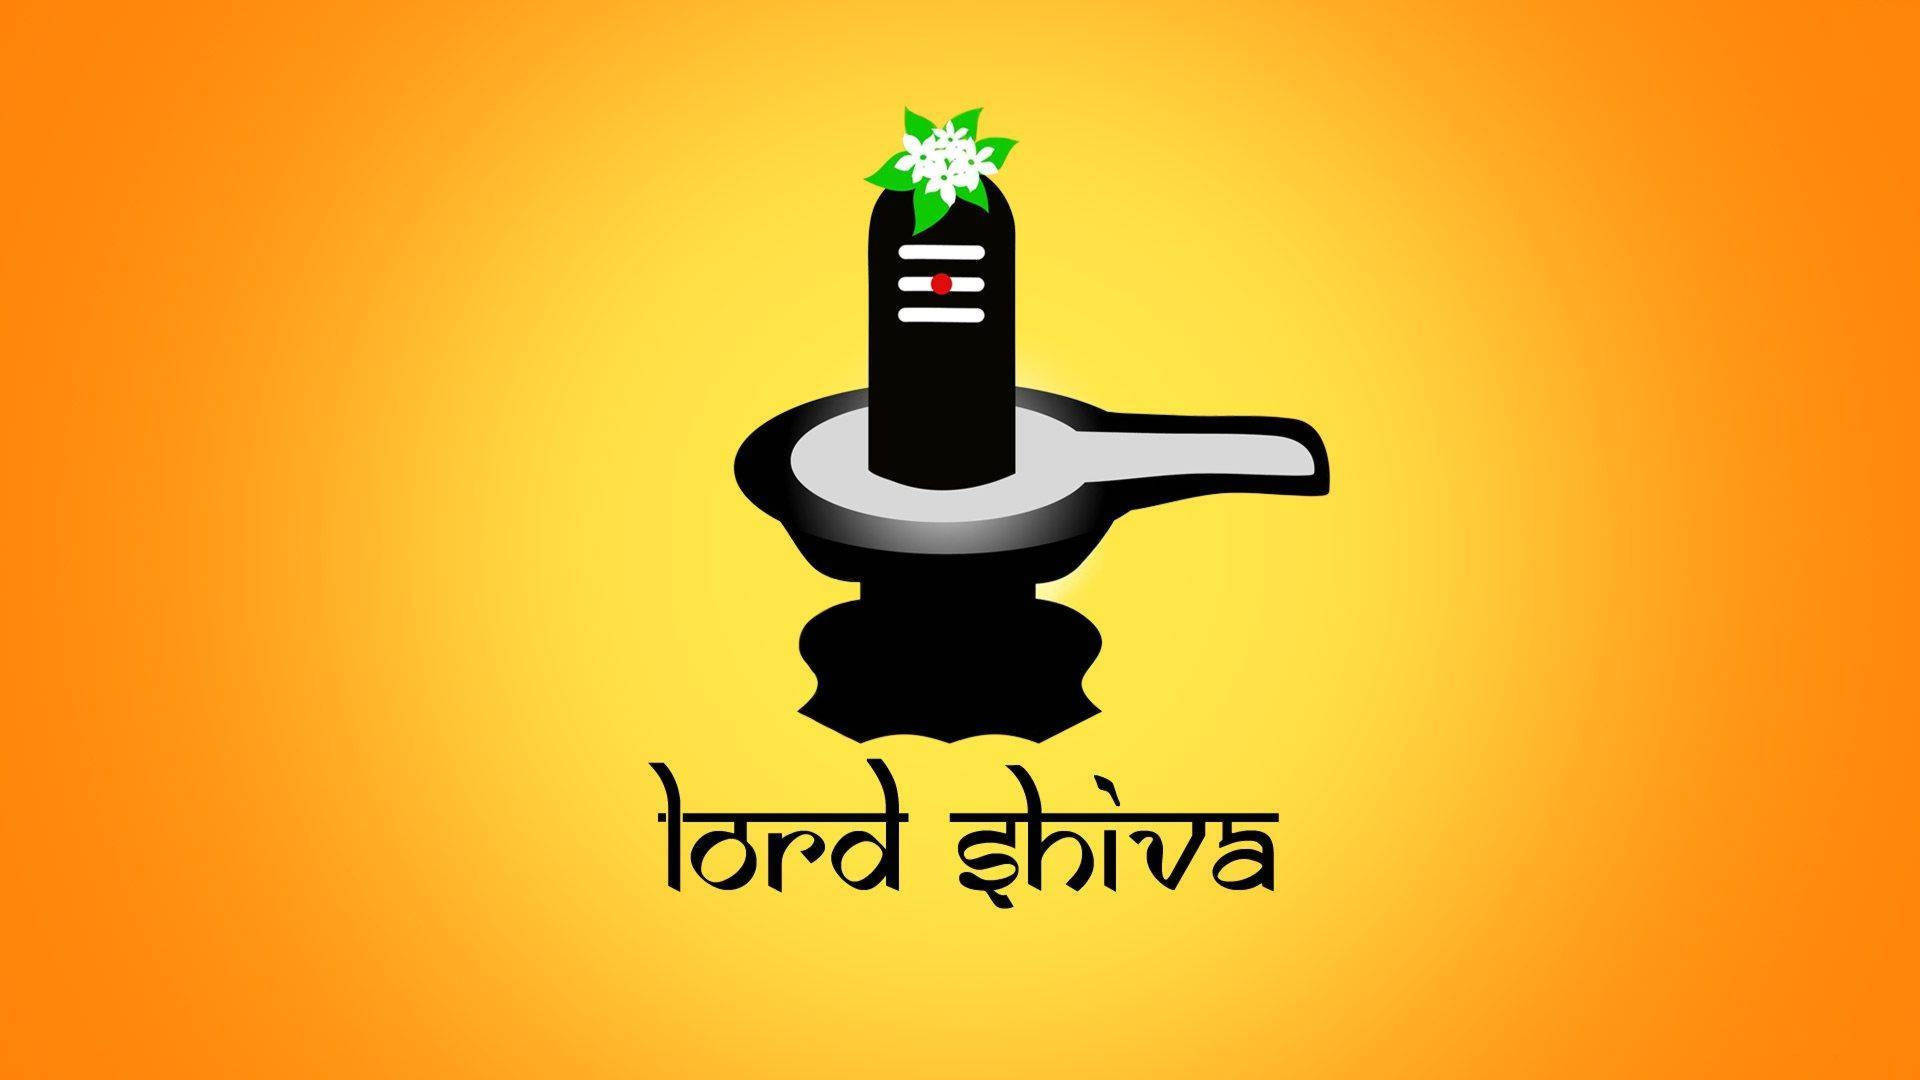 Lord Shiva logo | Lord shiva, Lord shiva hd images, Shiva